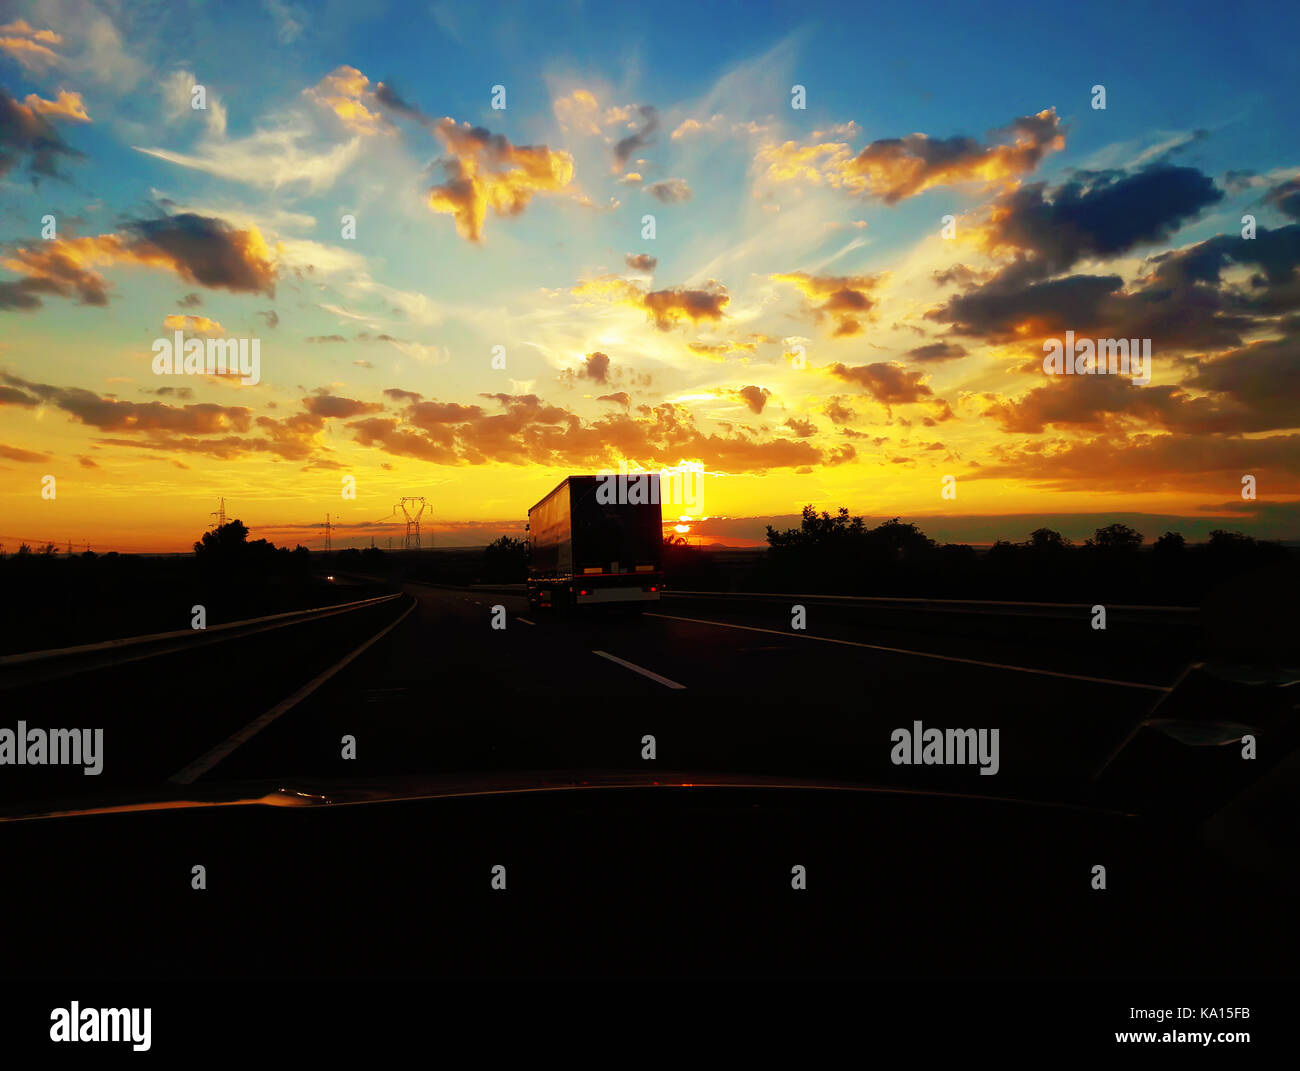 La guida su una strada dietro un camion su un bellissimo tramonto sfondo. viaggi in automobile, viaggio di vacanza. Foto Stock